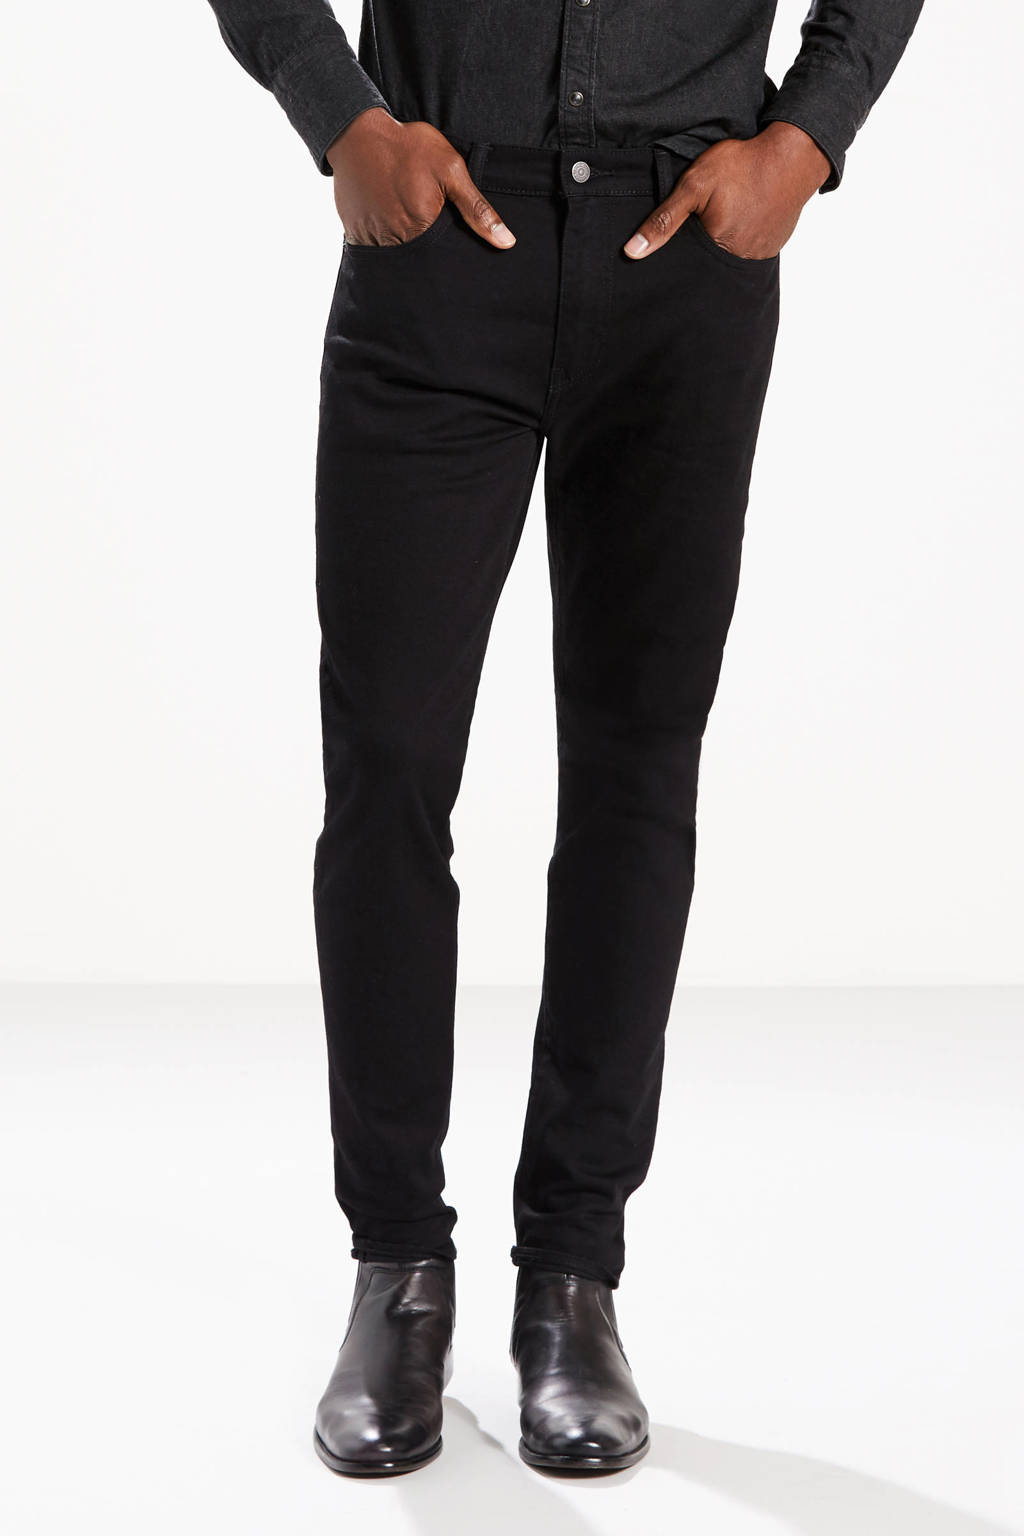 Metalen lijn elkaar Kreet Levi's 512 slim tapered fit jeans black | wehkamp